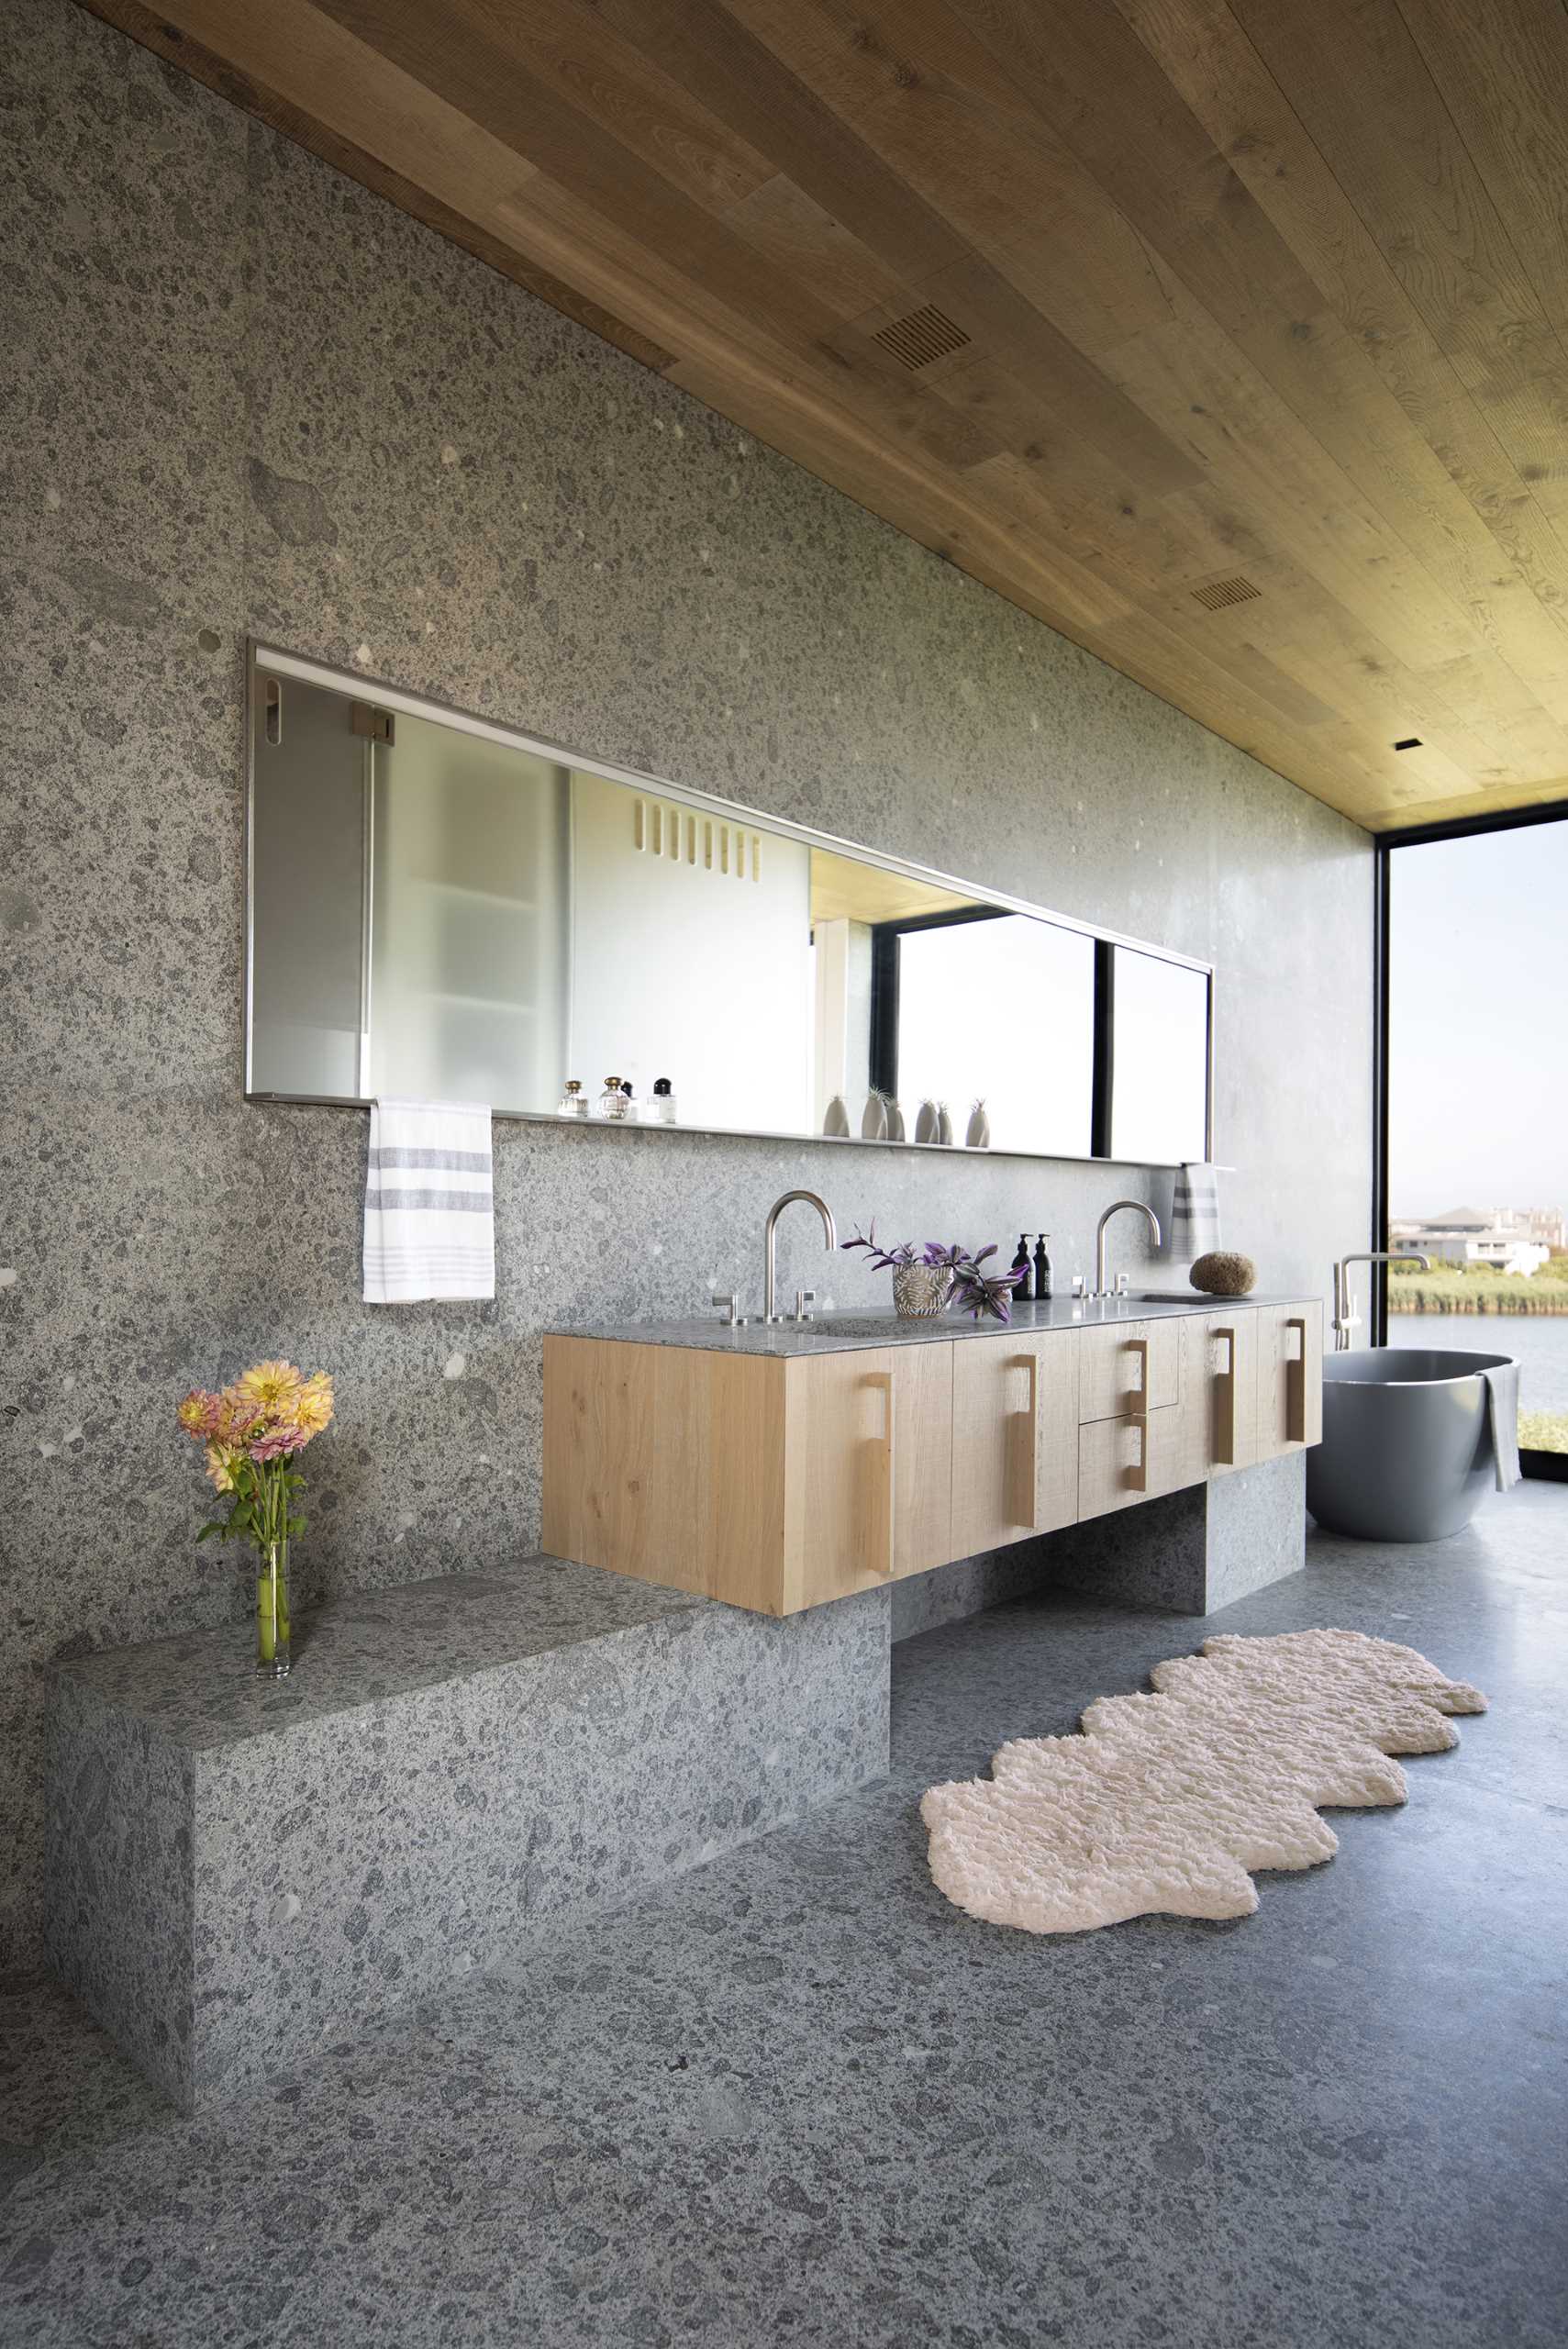 În această baie modernă, o chiuvetă personalizată aliniază peretele, în timp ce tavanul din lemn se potrivește cu celelalte tavane din lemn din toată casa.